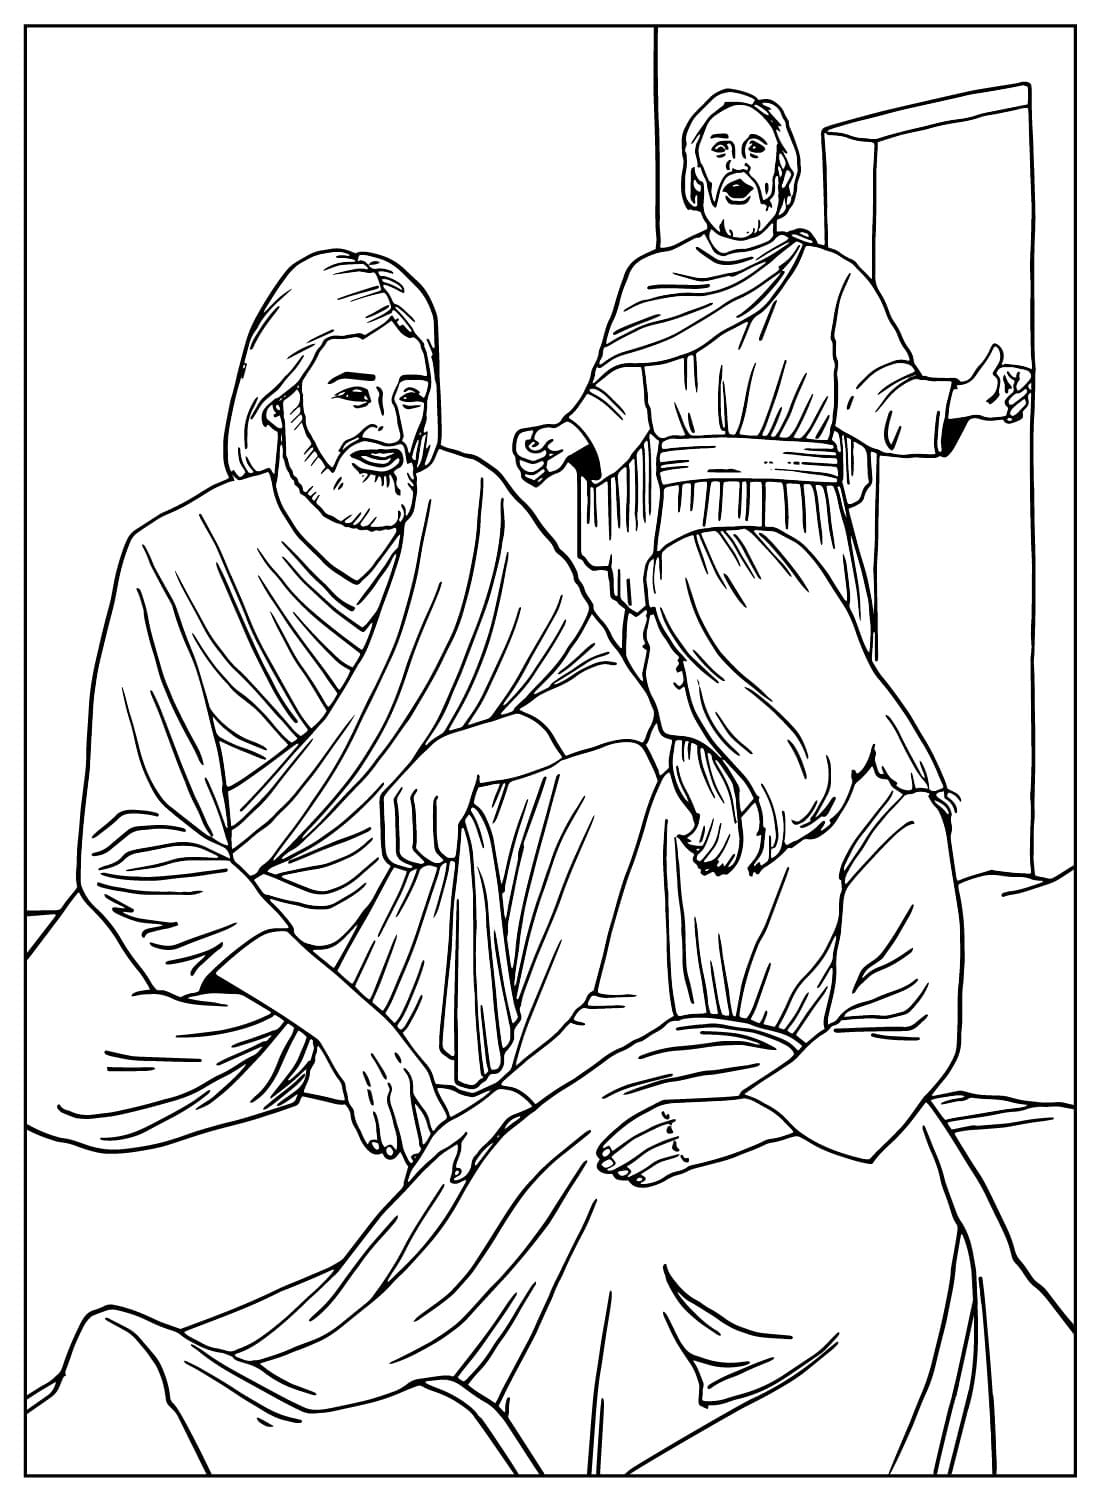 Jesus Saved Jairus’ Daughter Coloring Page from Jesus